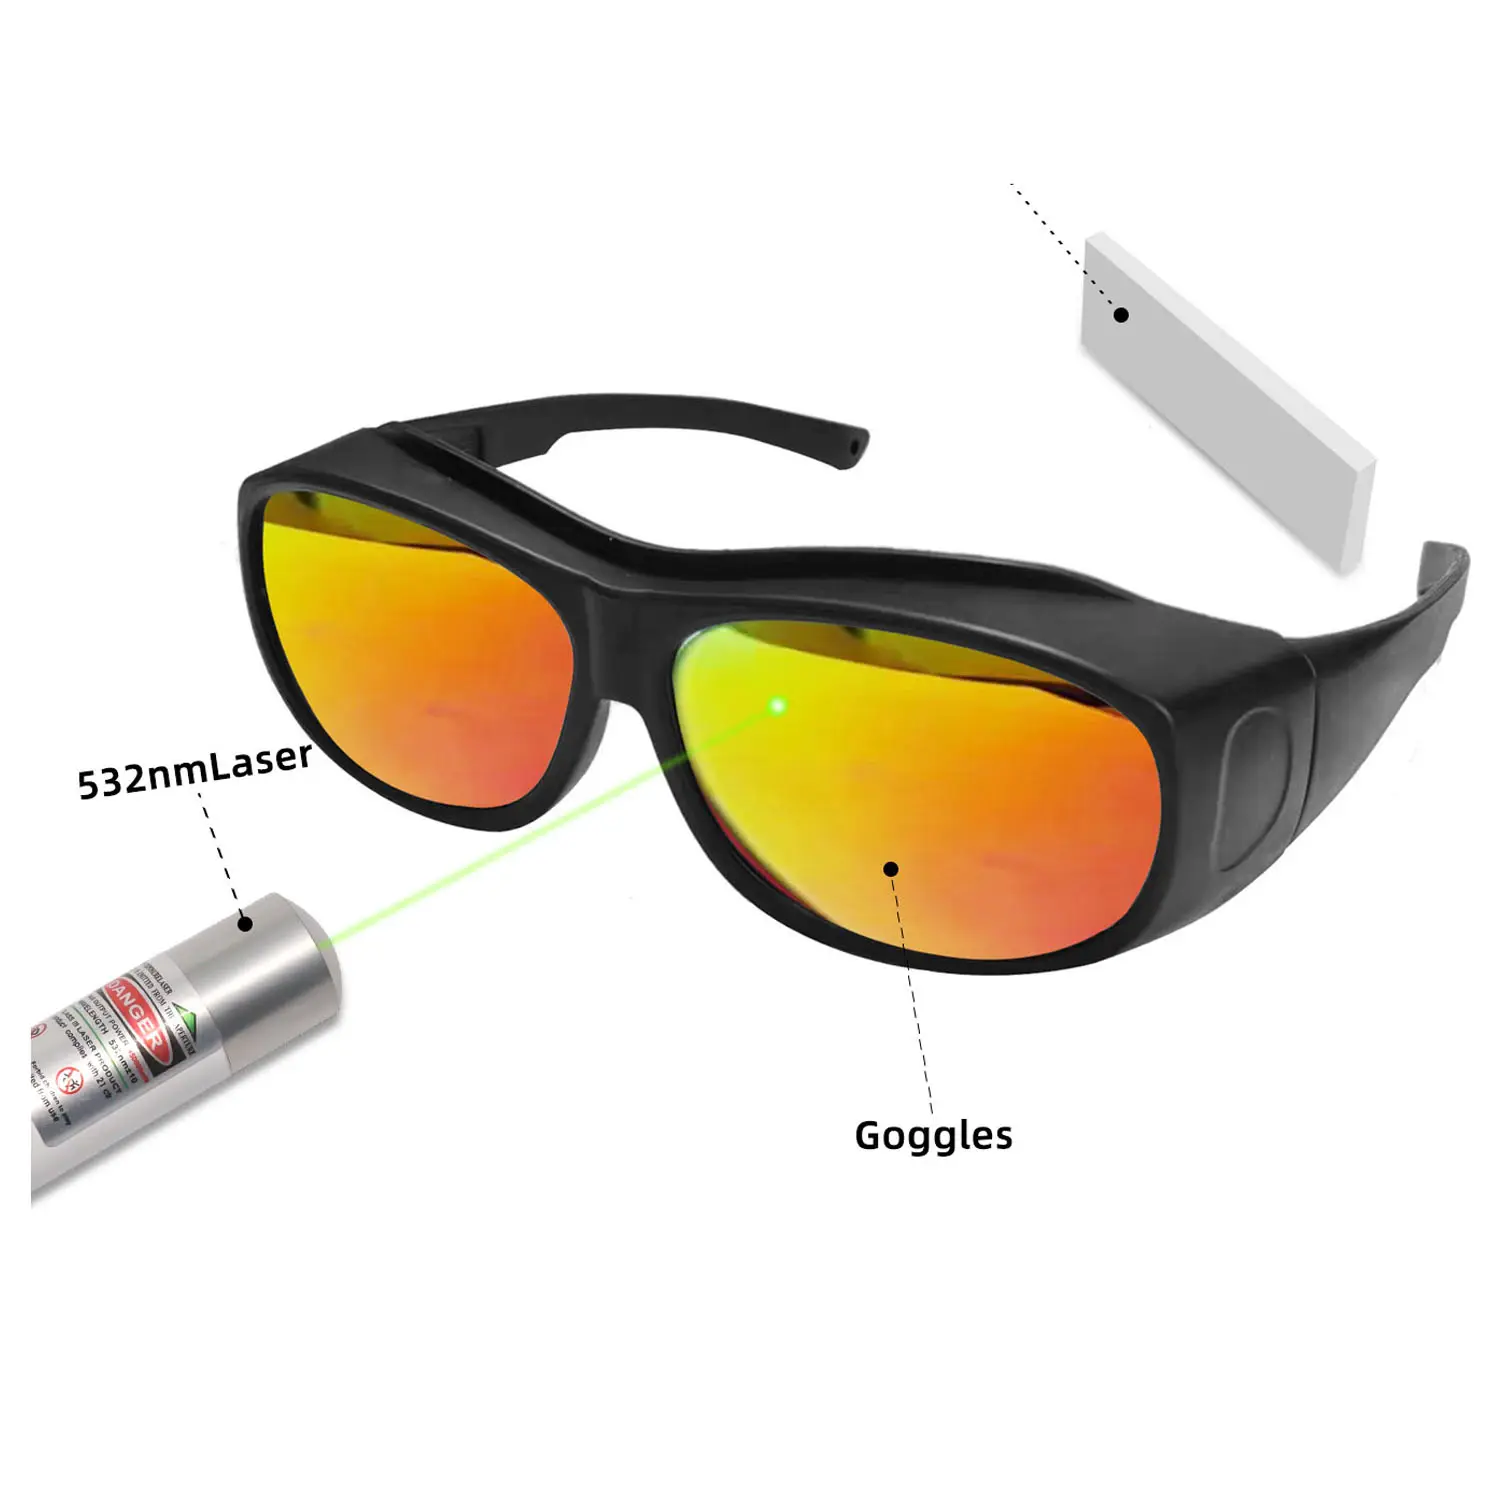 200nm-2000nm Laser Googles Diode Ndyag Faser Lasershair Entfernung Schutzs chweiß brille CE EN207 Antibeschlag-Schutzbrille